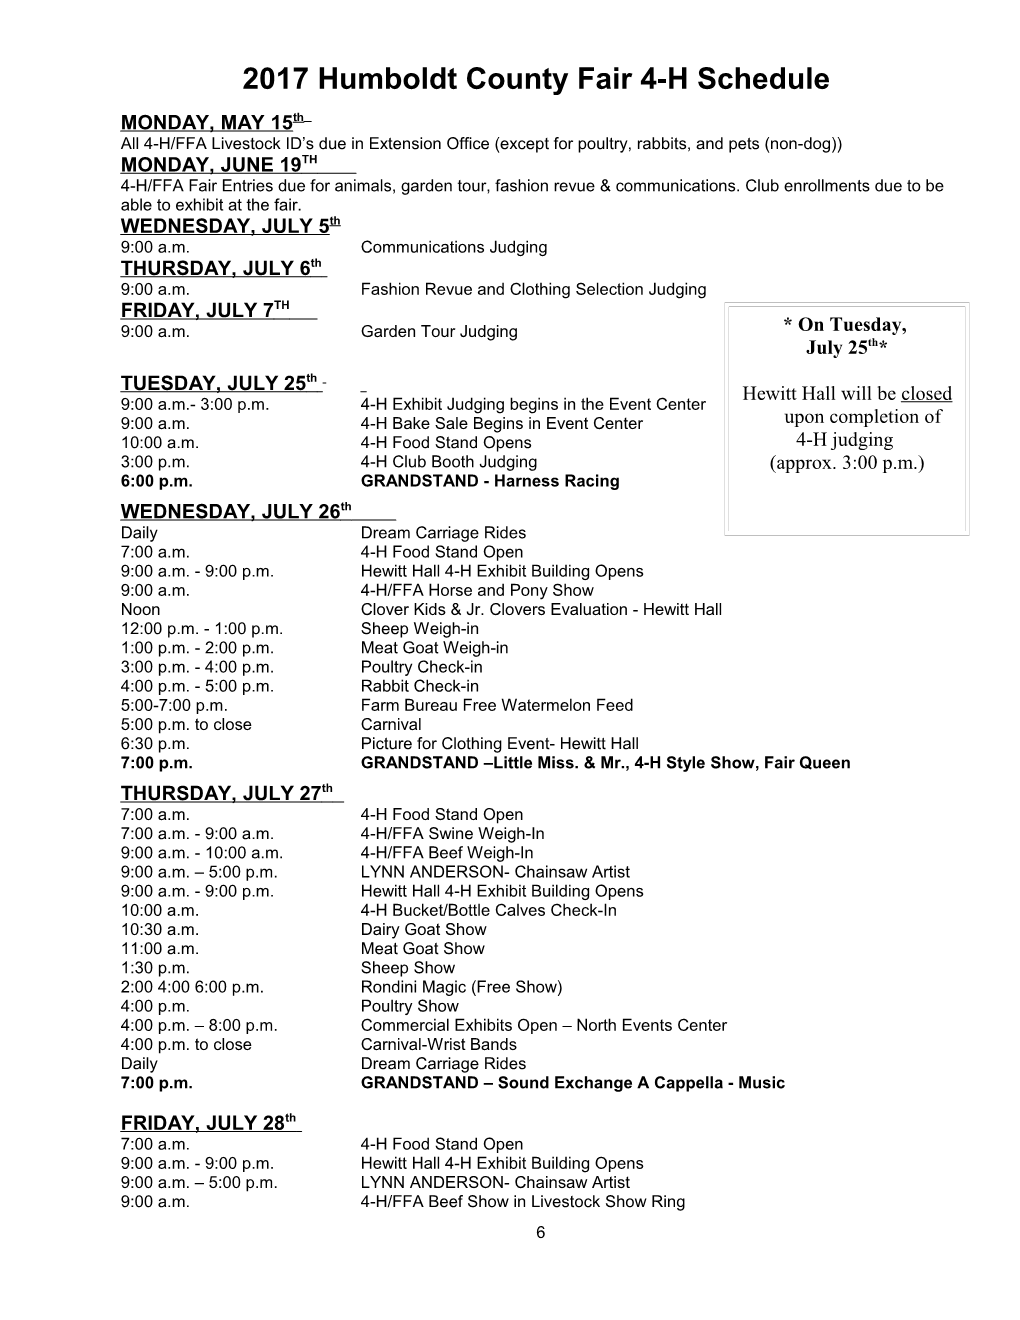 2000 Humboldt County Fair Schedule